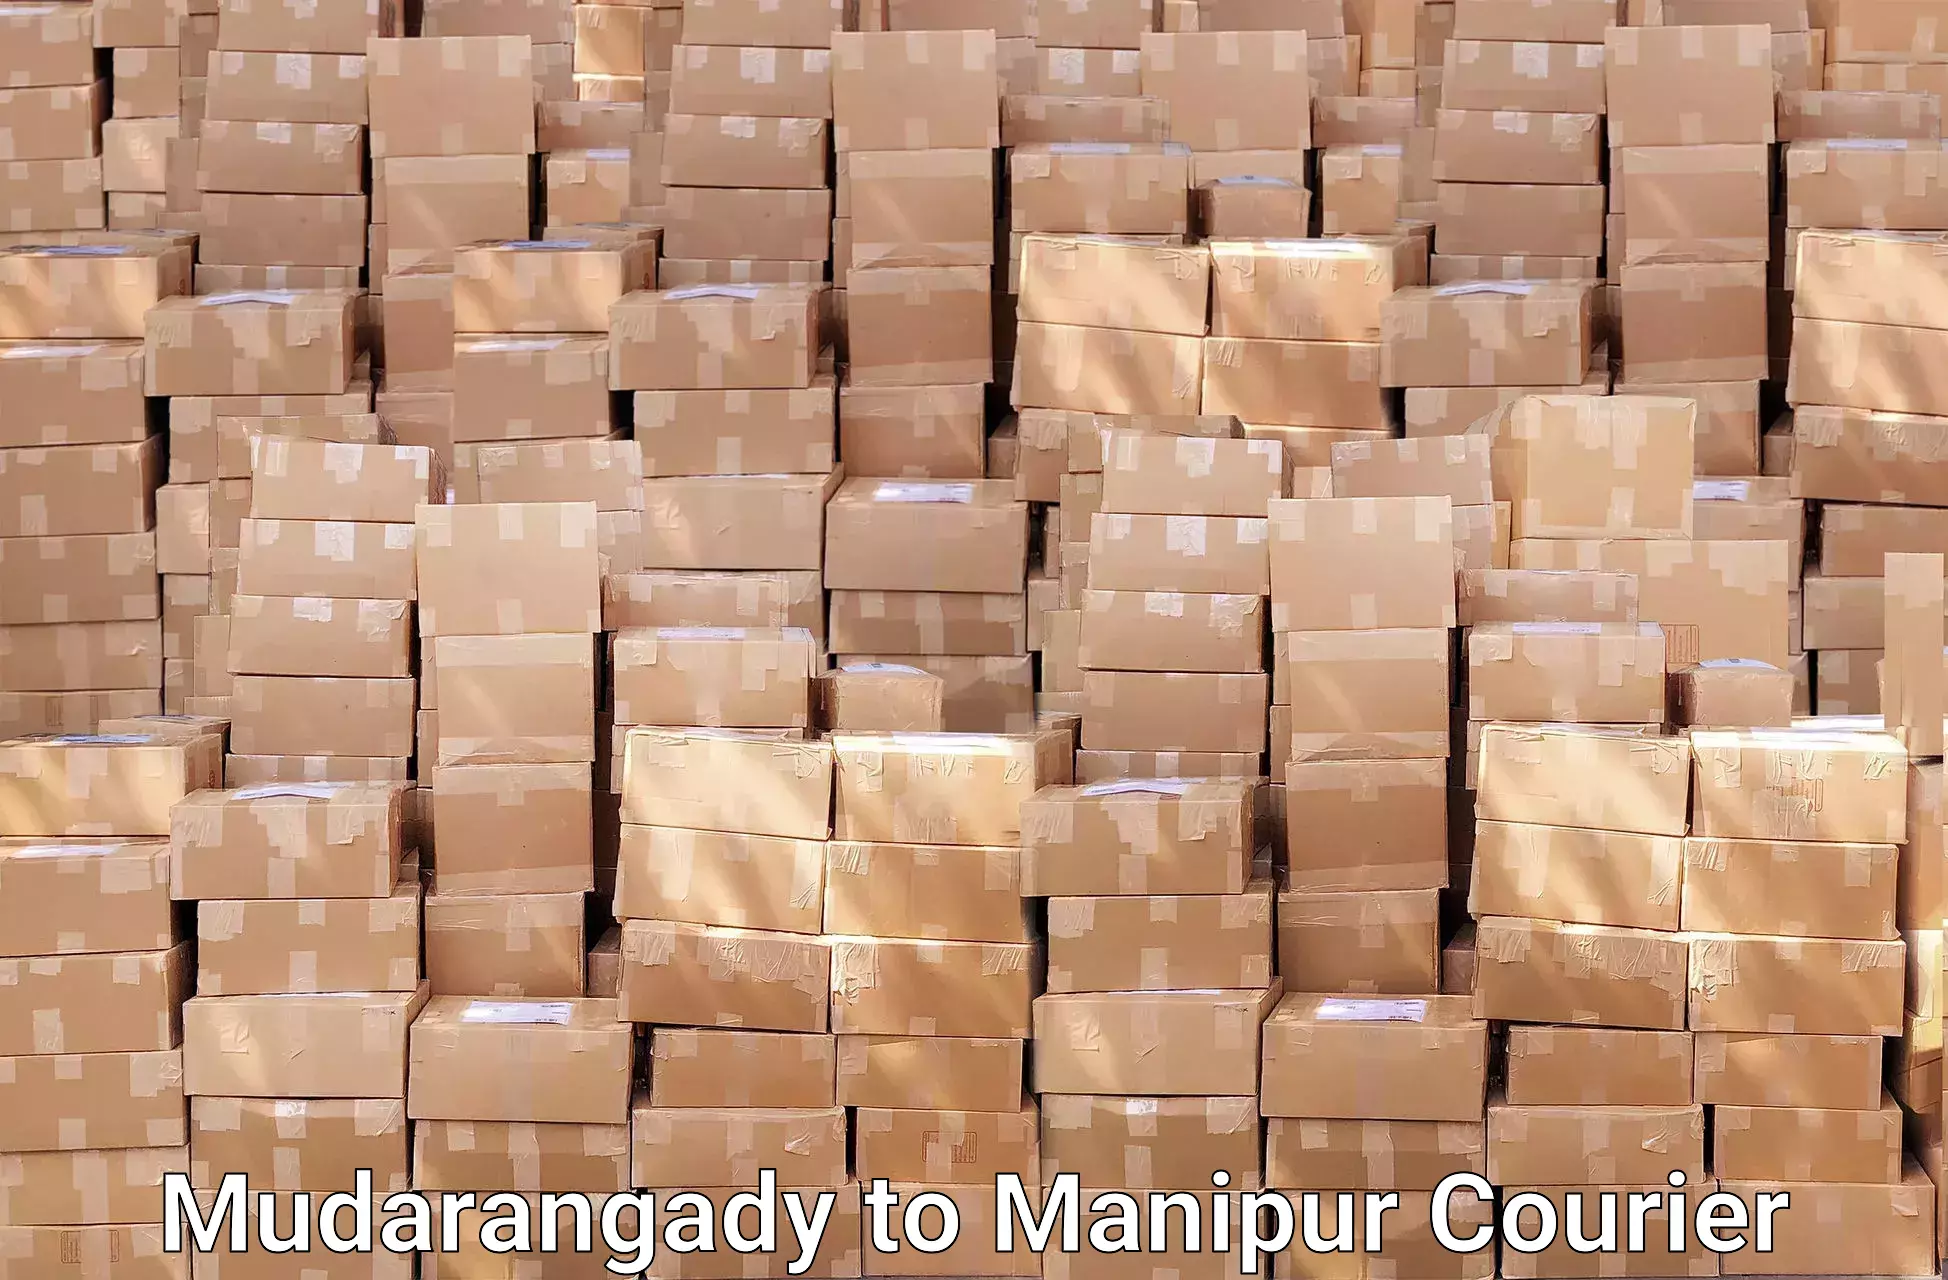 Furniture moving experts Mudarangady to Manipur